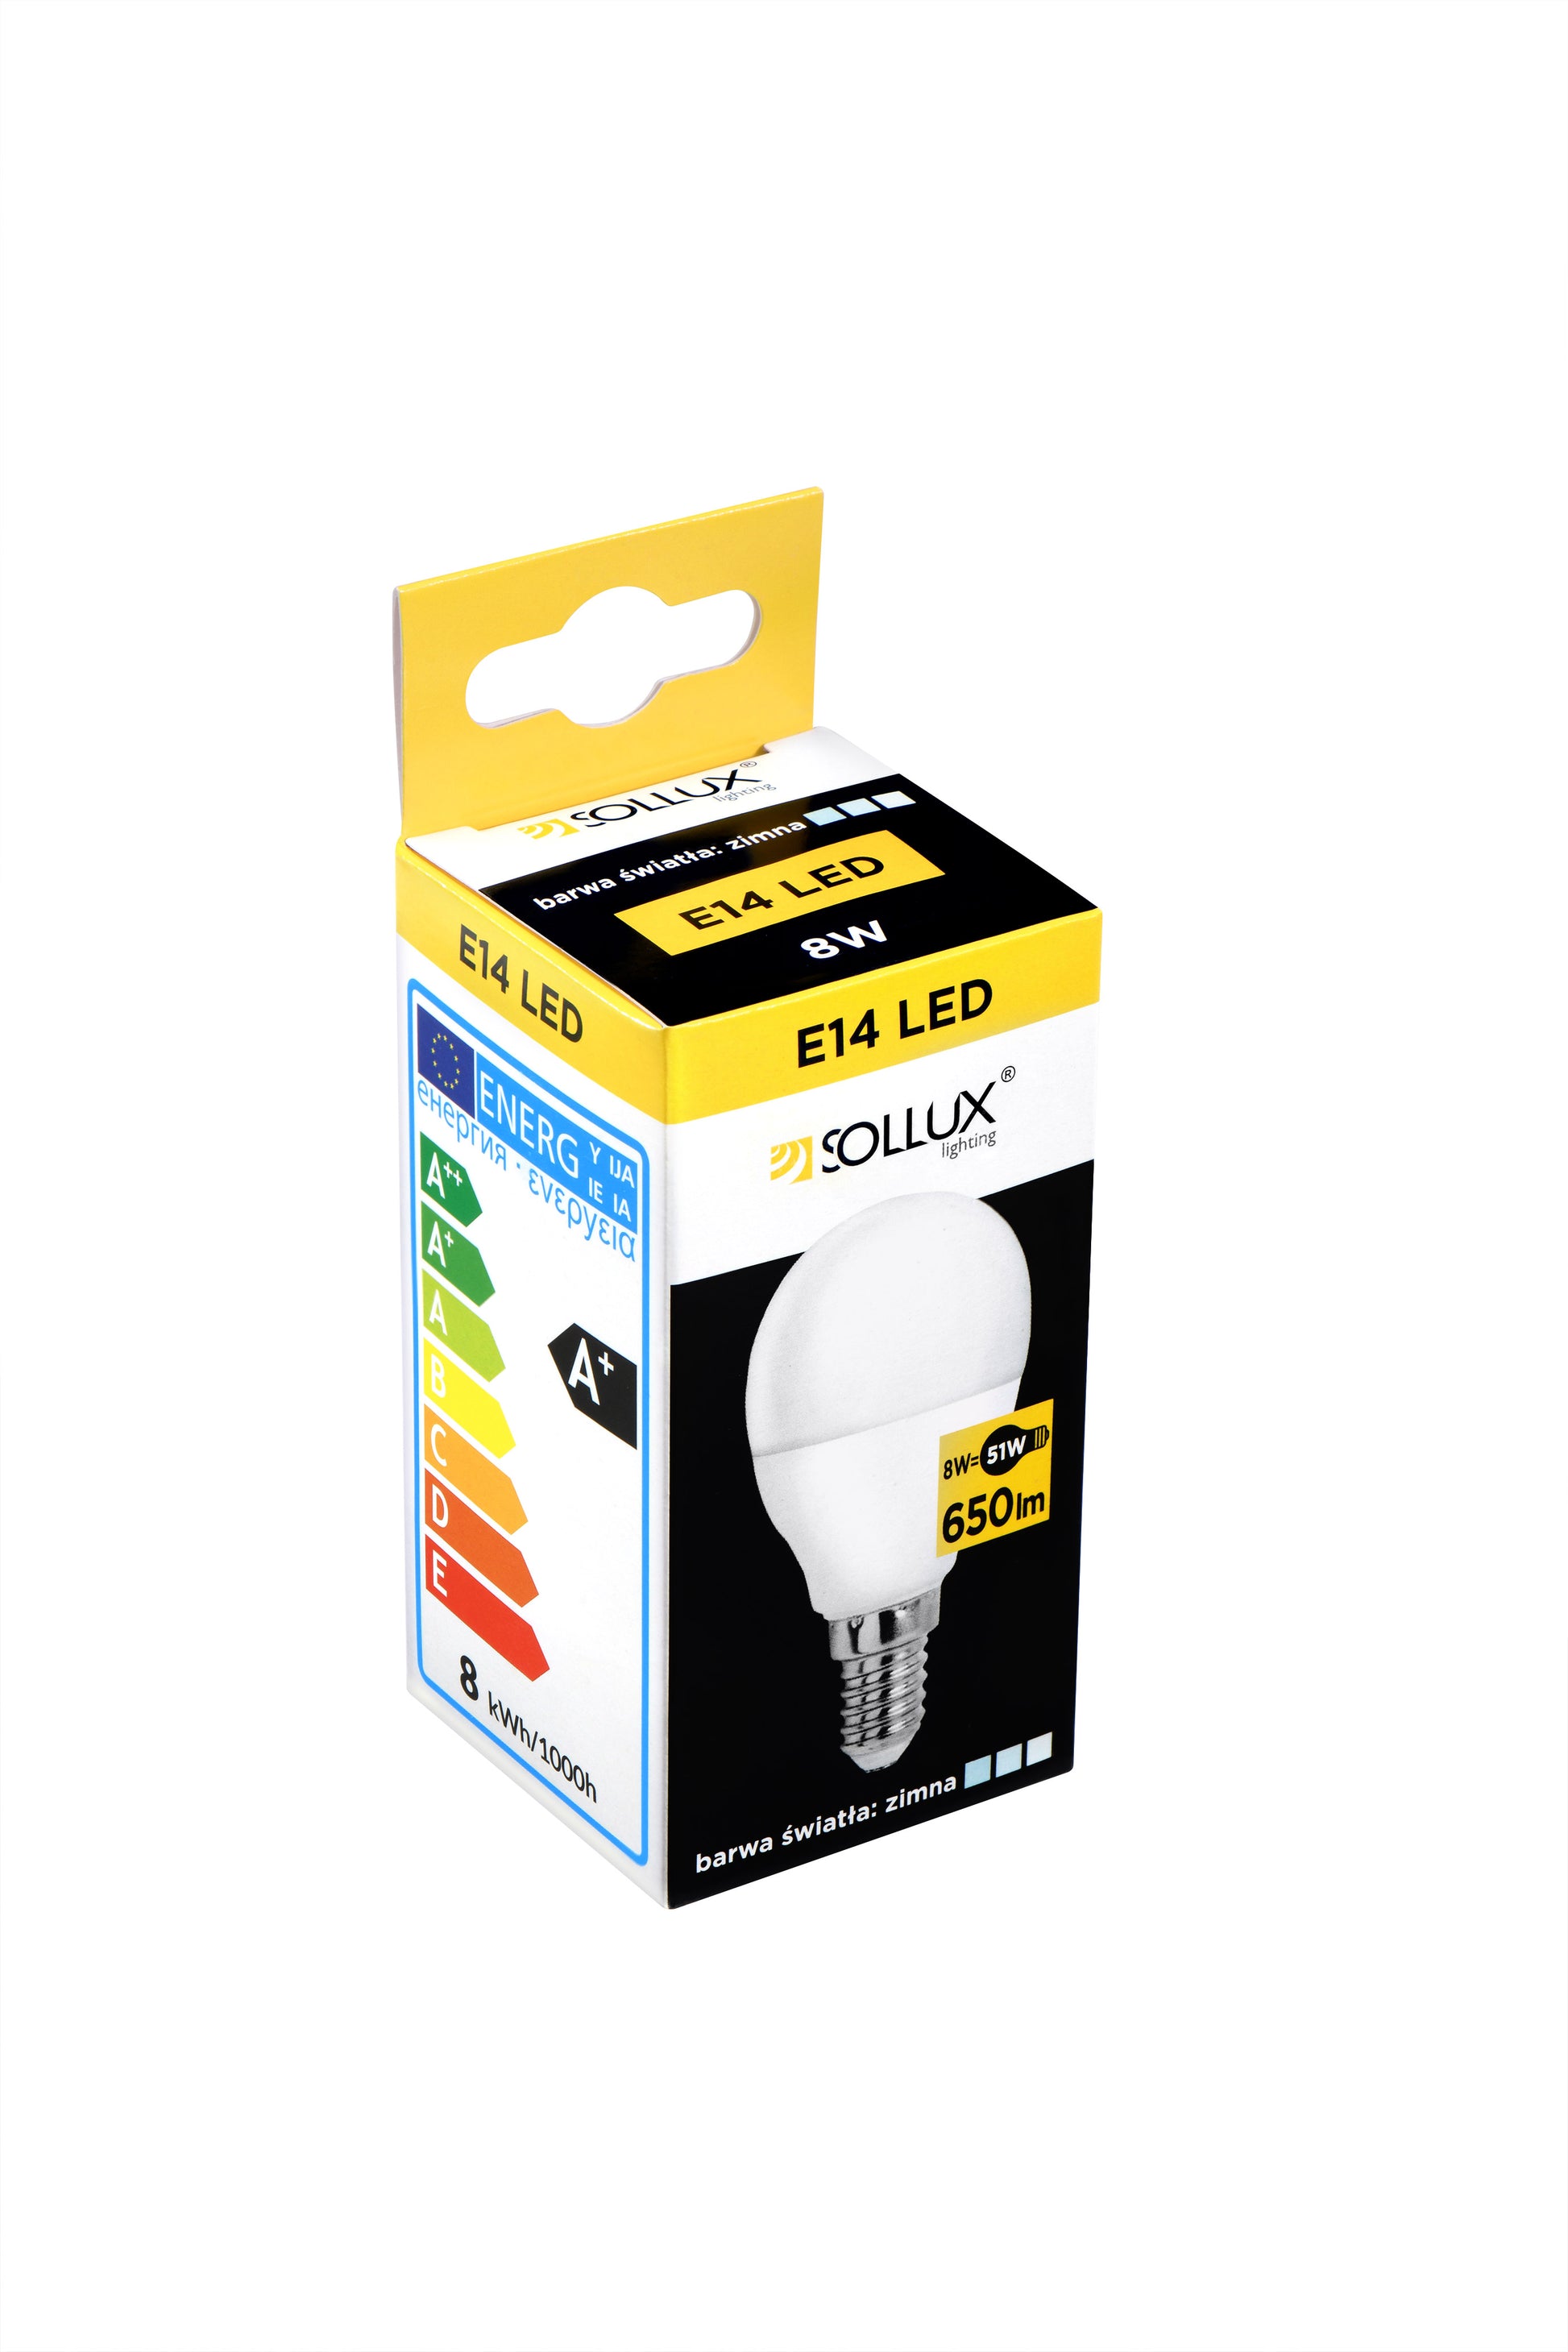 LED bulb E14 4000K 8W 650lm